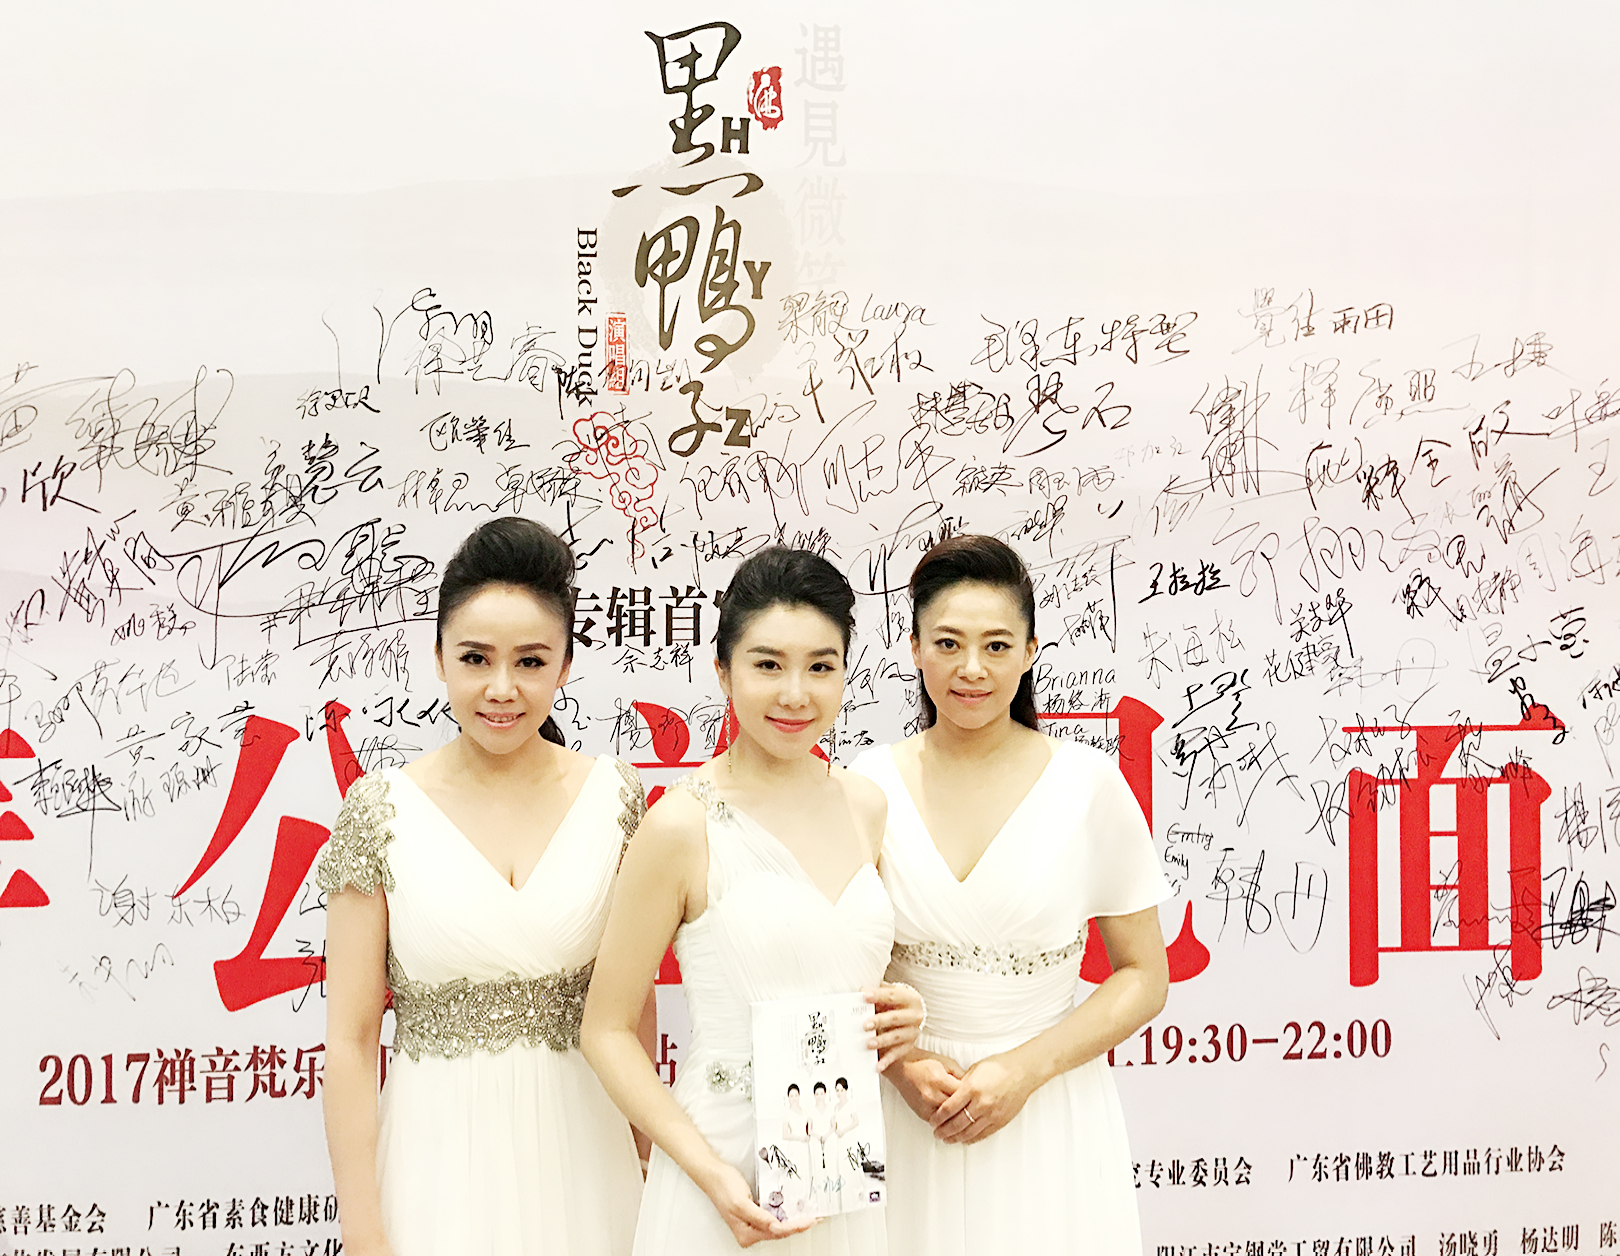 5月7日,黑鸭子演唱组(郭祁,倪雅丰,李伟)于广州市南方剧场举办专辑